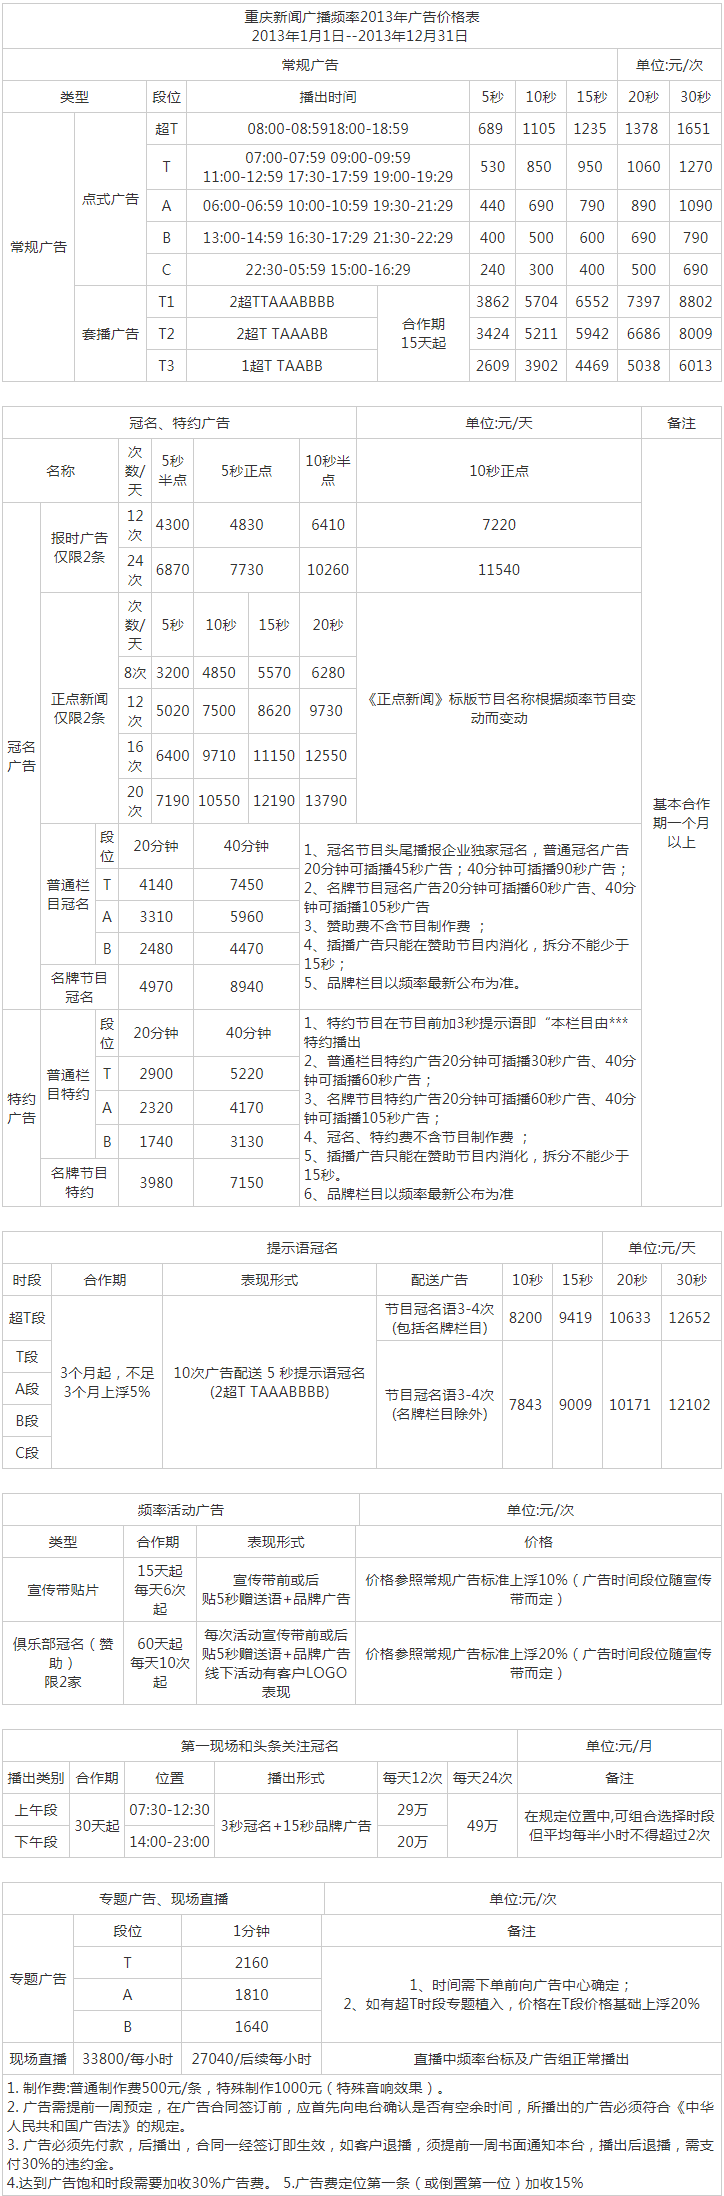 2013重庆人民广播电台新闻频率 FM96.8广告报价表.png